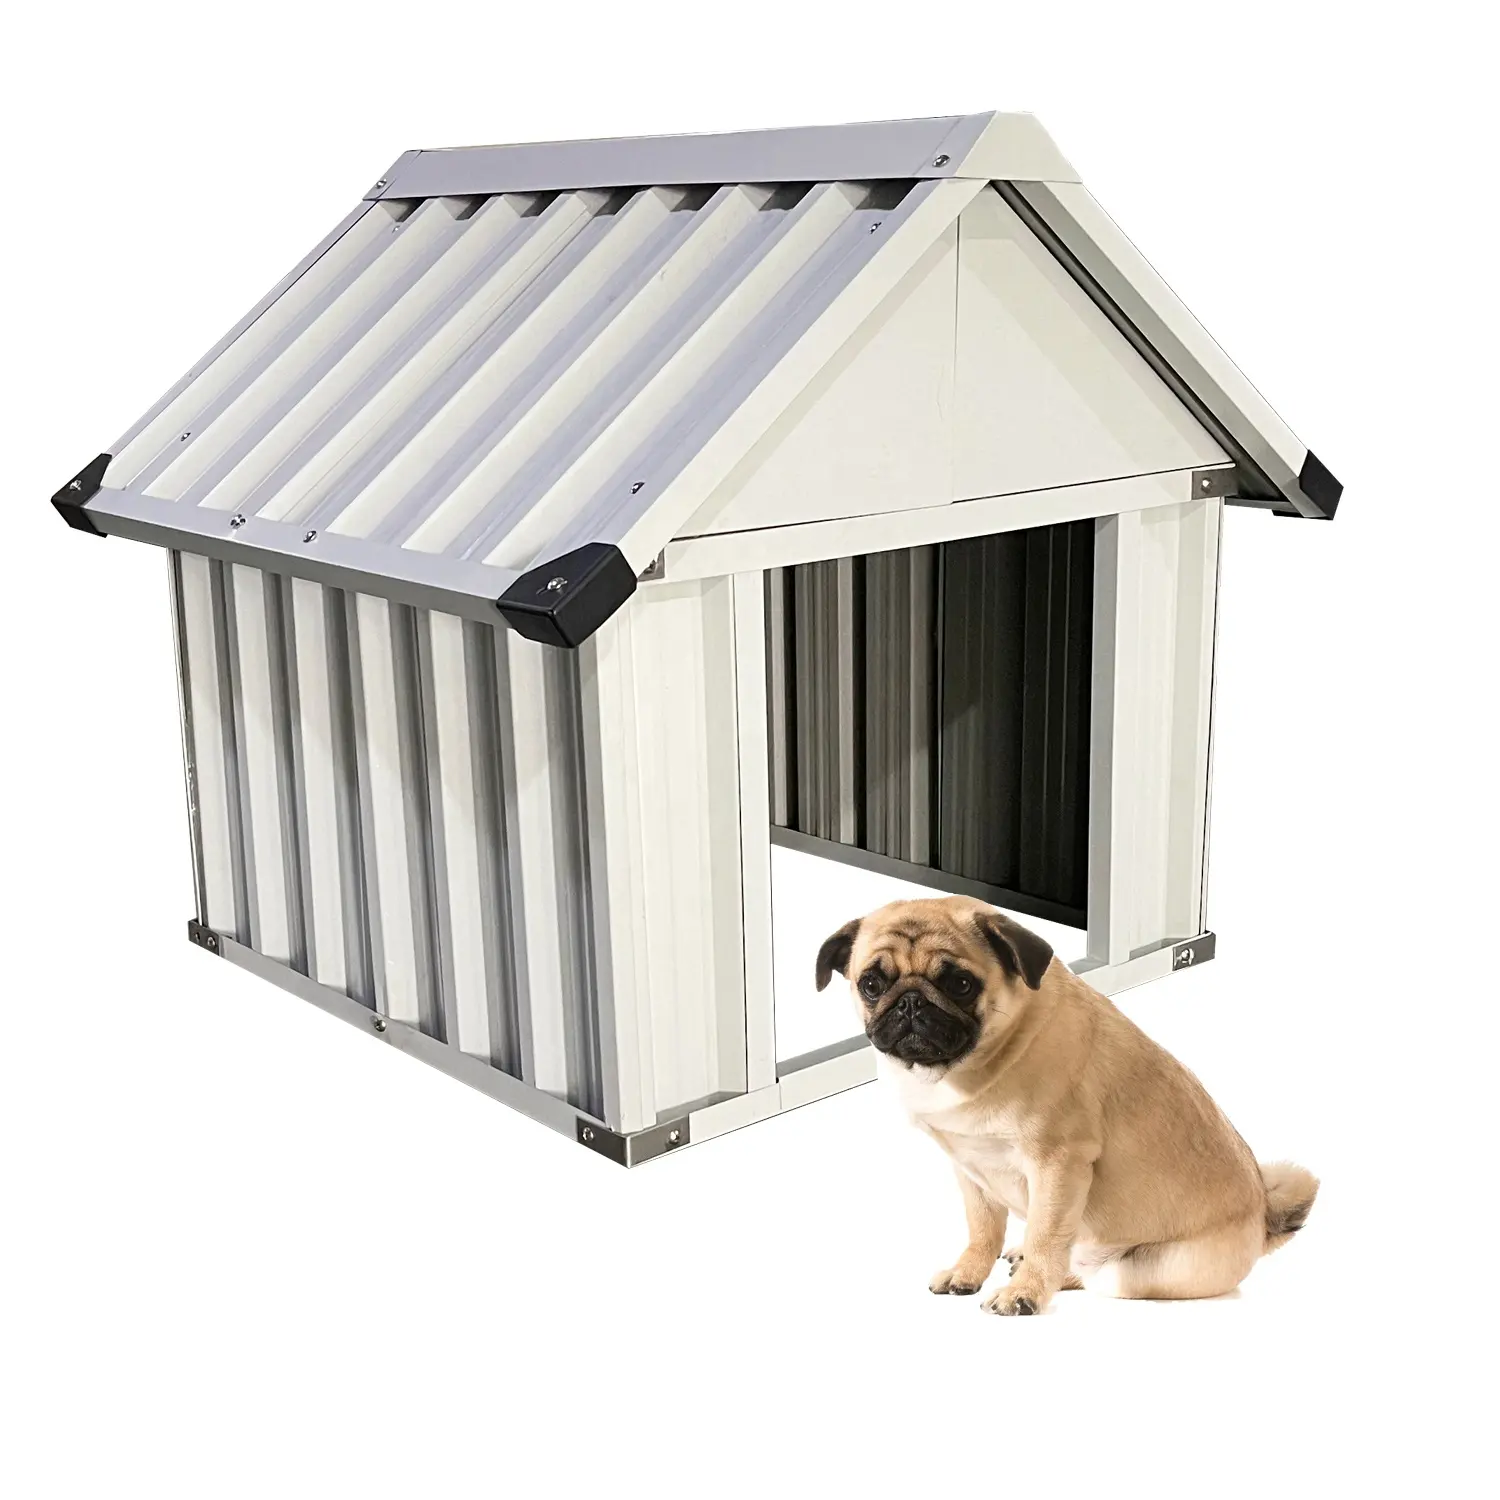 Casa de cachorro pequena para jardim de quintal, impermeável, metal durável, interior e exterior